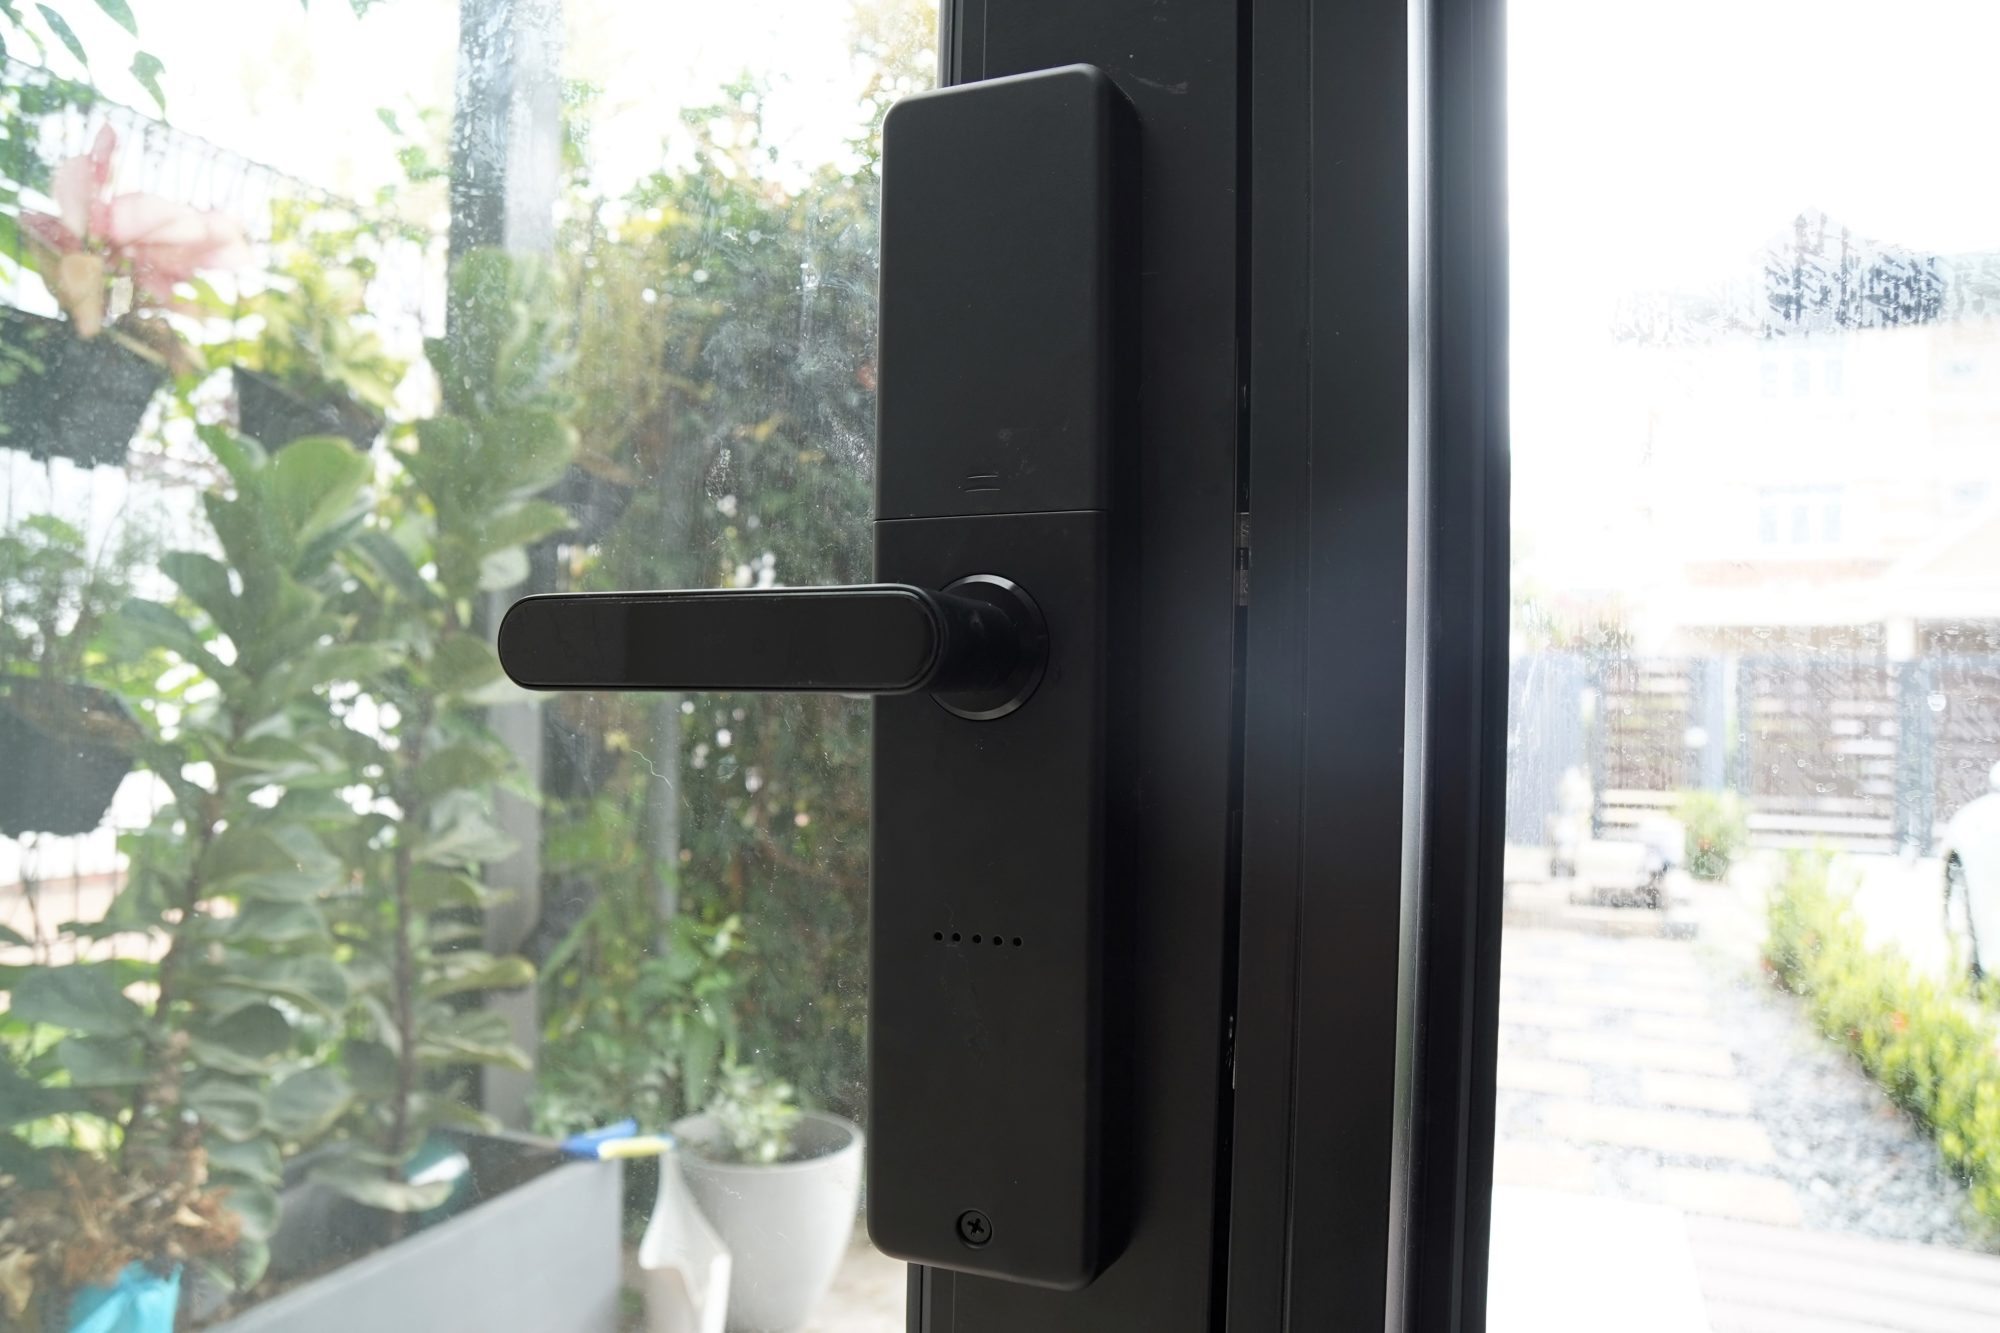 Smart Door lock
Digital Door lock